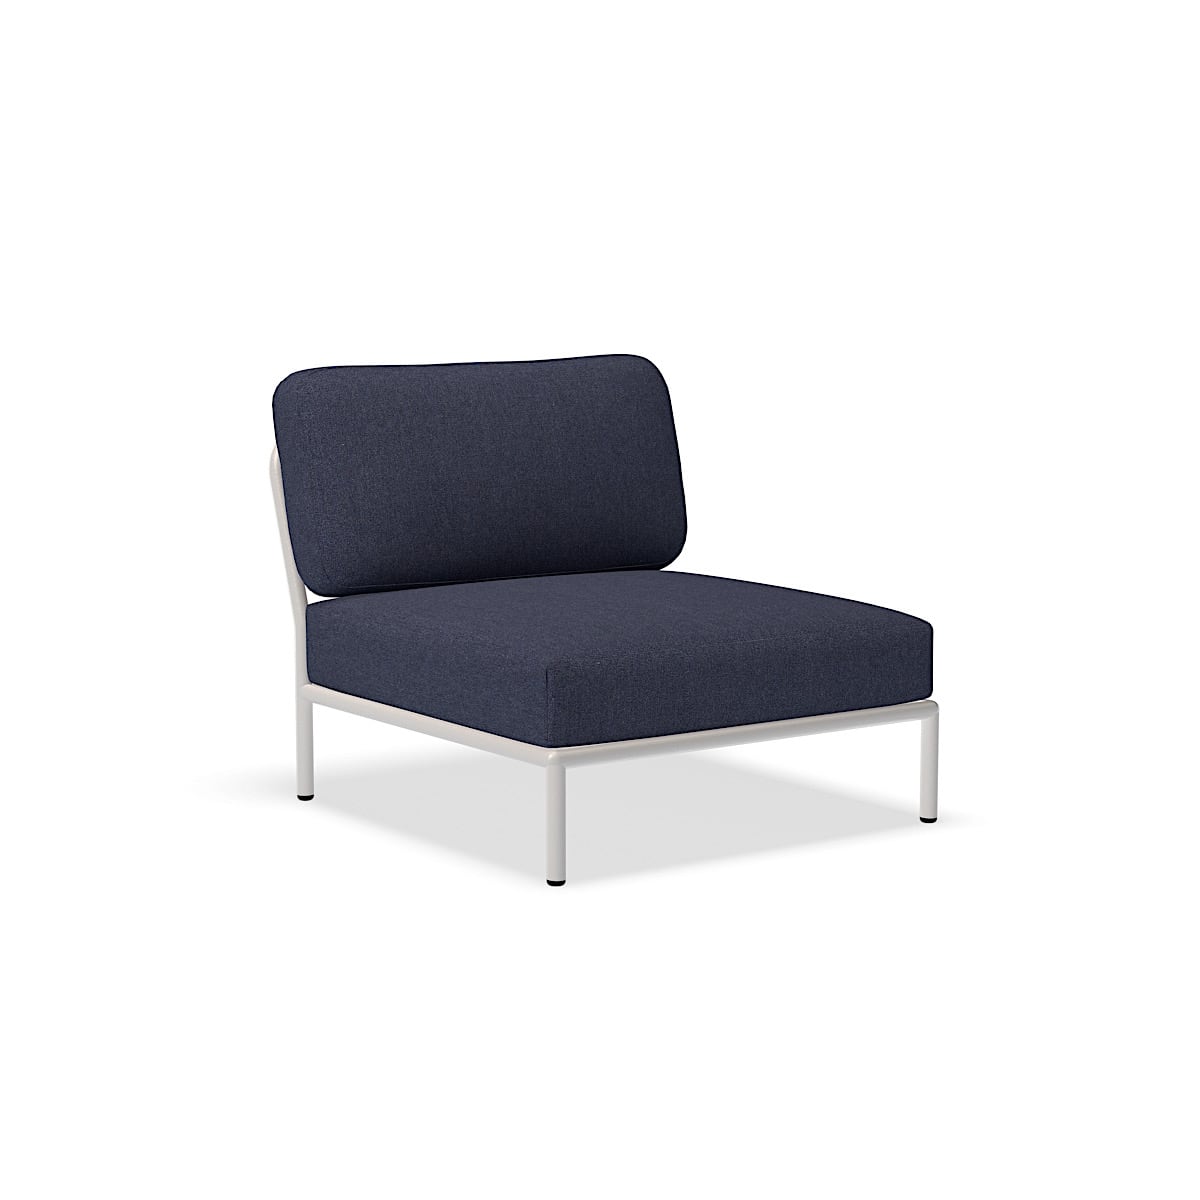 الكرسي - 12205-5343 - كرسي ، نيلي (HERITAGE) ، هيكل أبيض